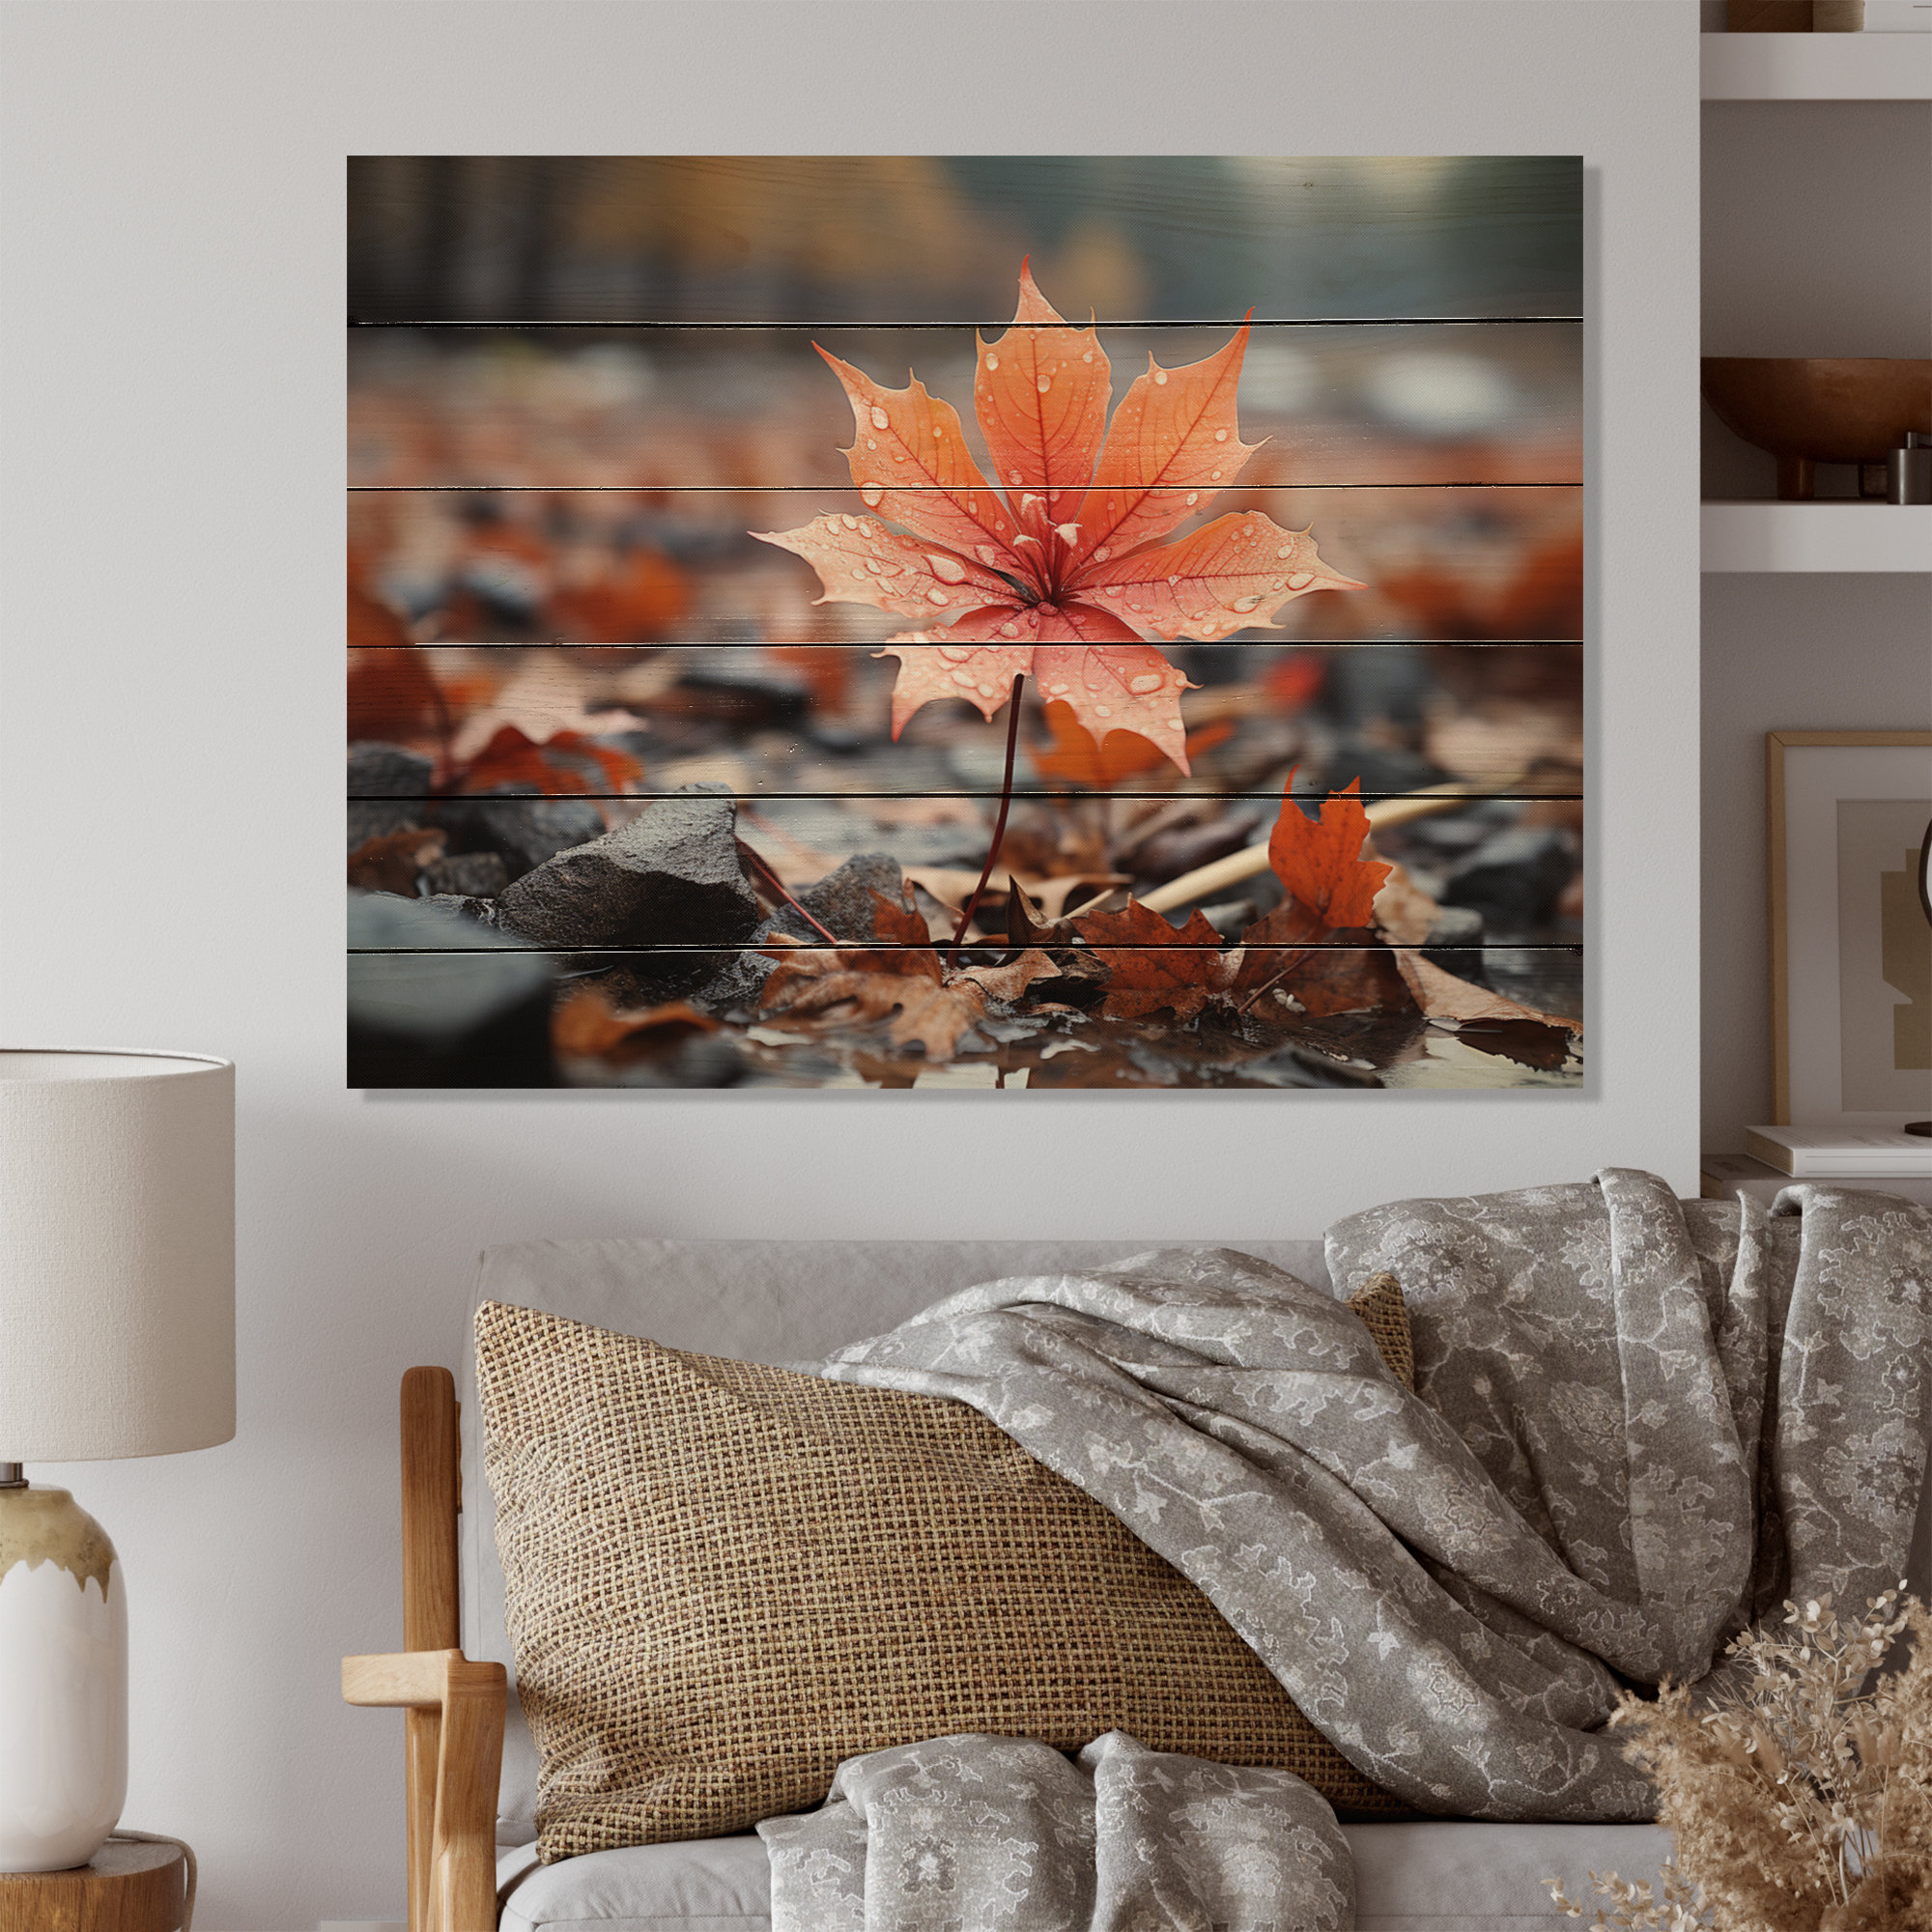 https://assets.wfcdn.com/im/63043353/compr-r85/2590/259090437/coral-flower-autumn-radiance-i-on-wood-print.jpg